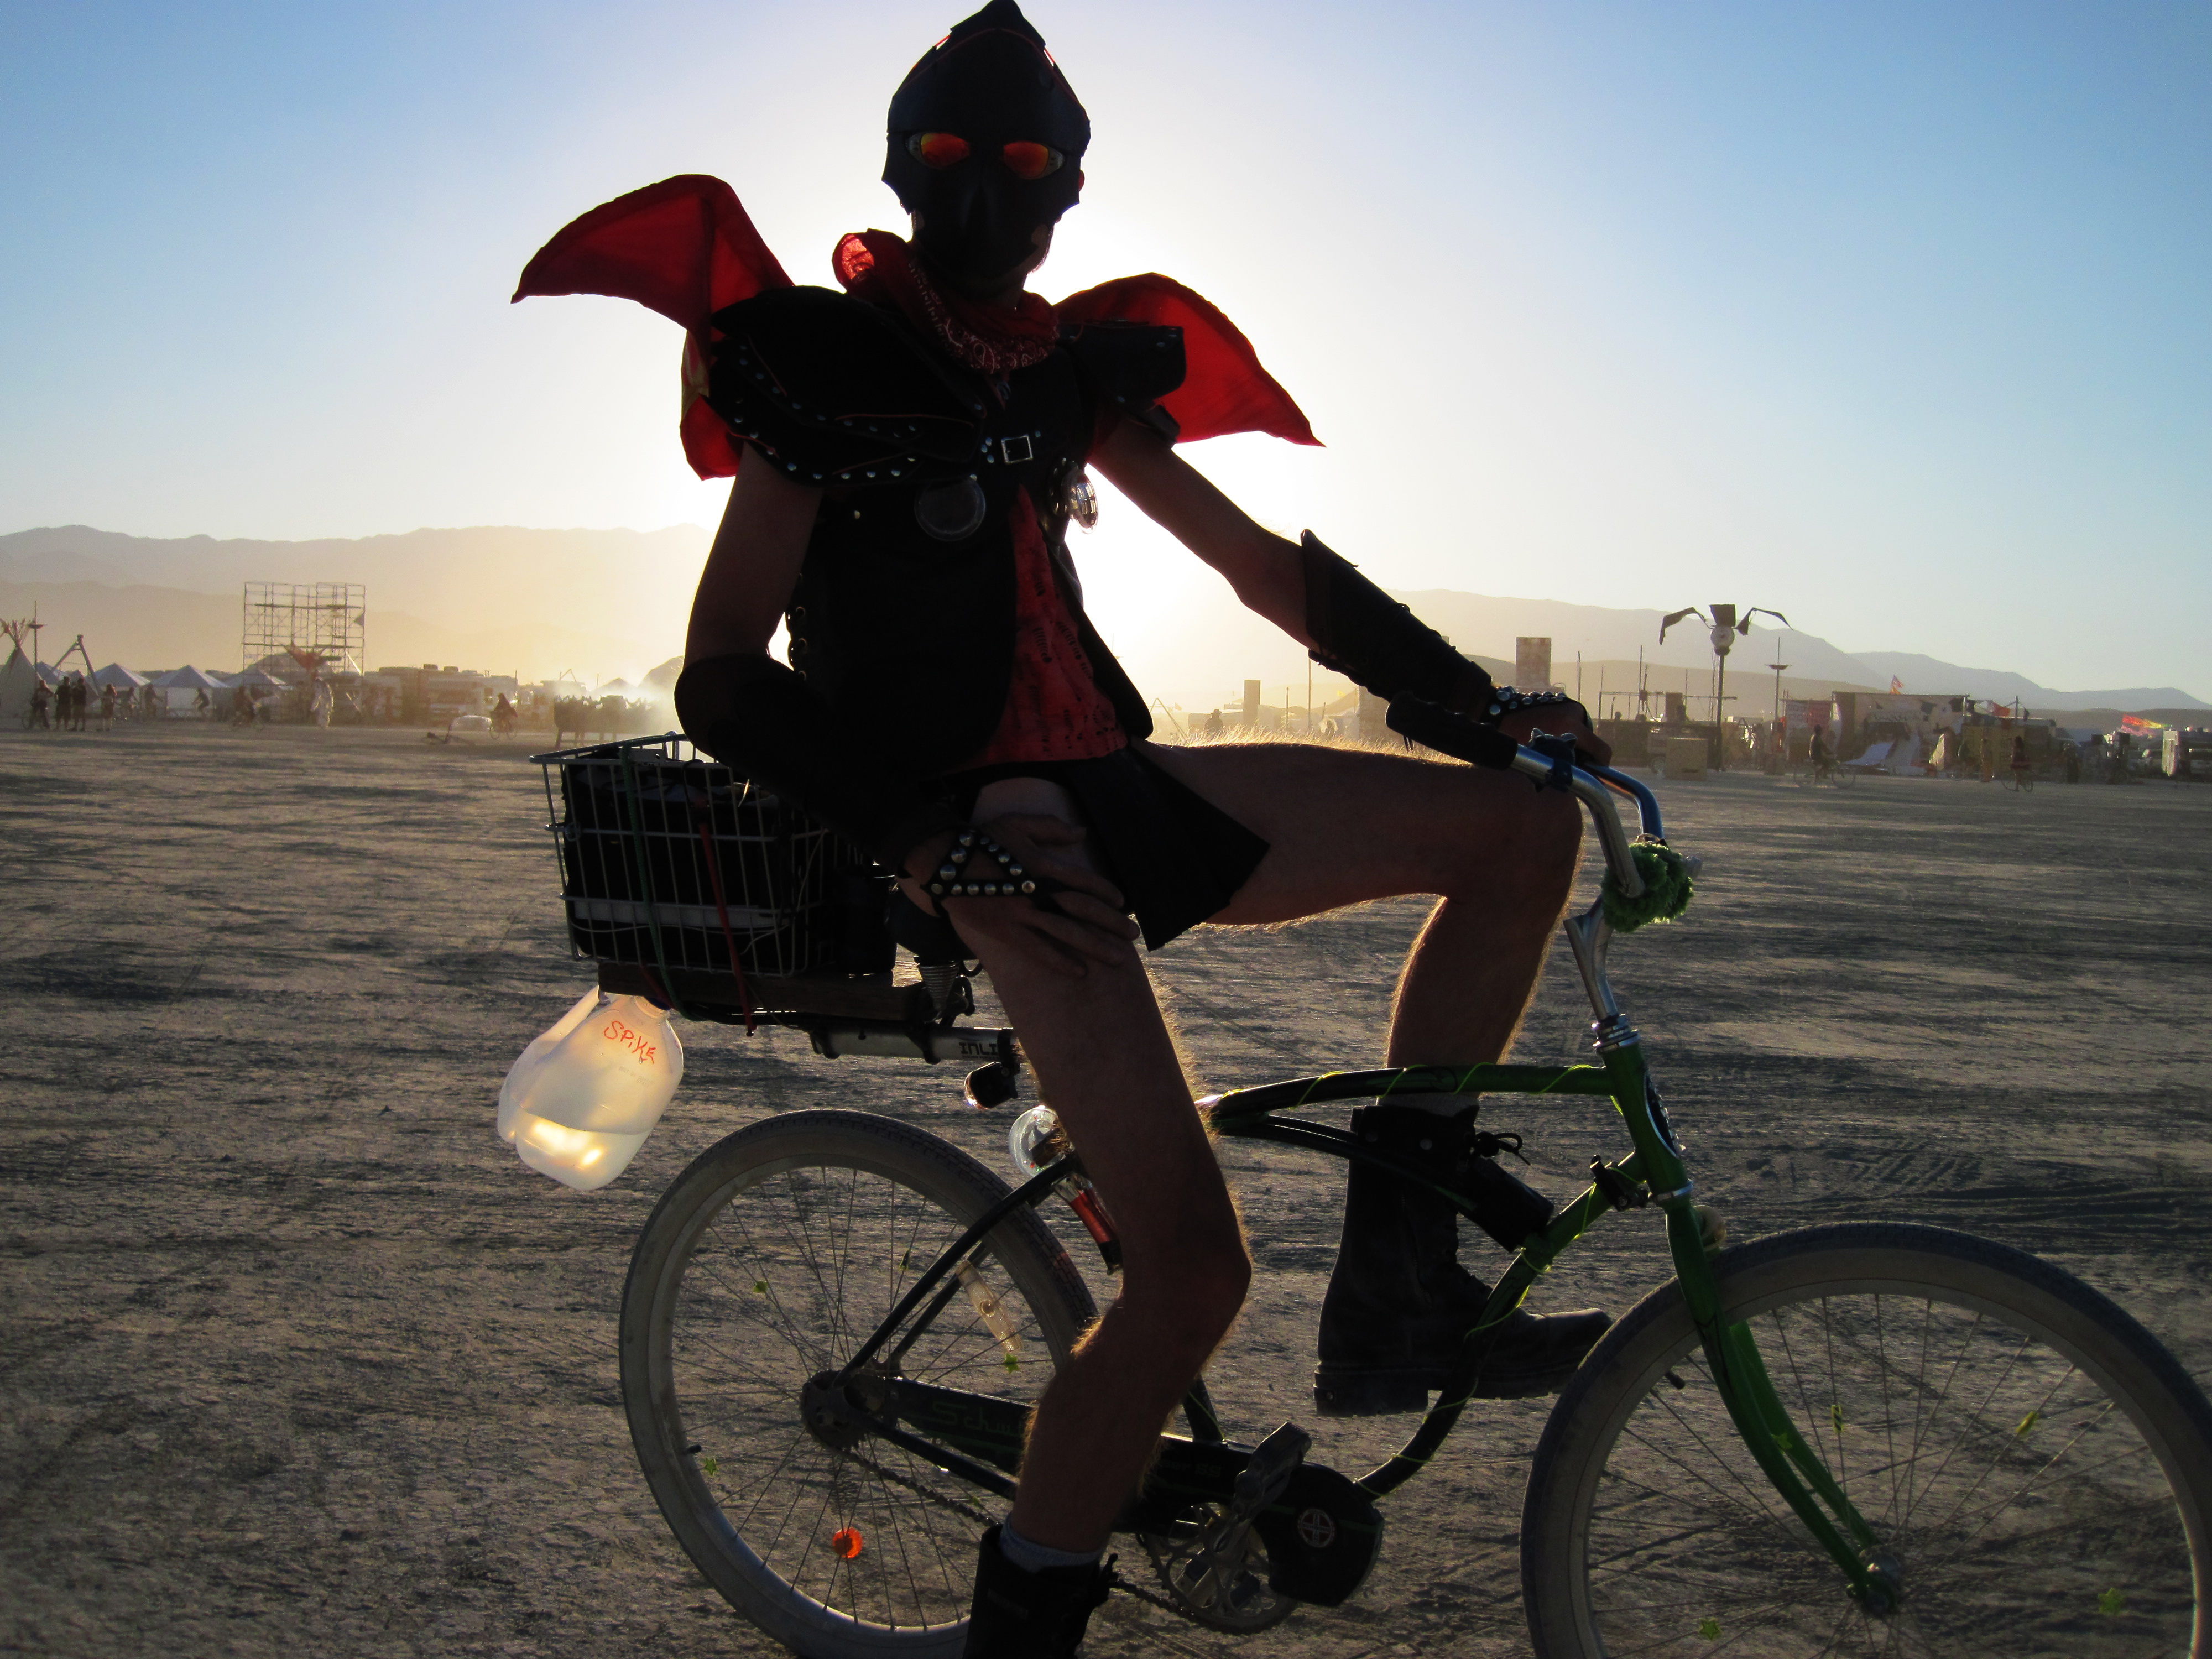 Preparing to Photograph Burning Man